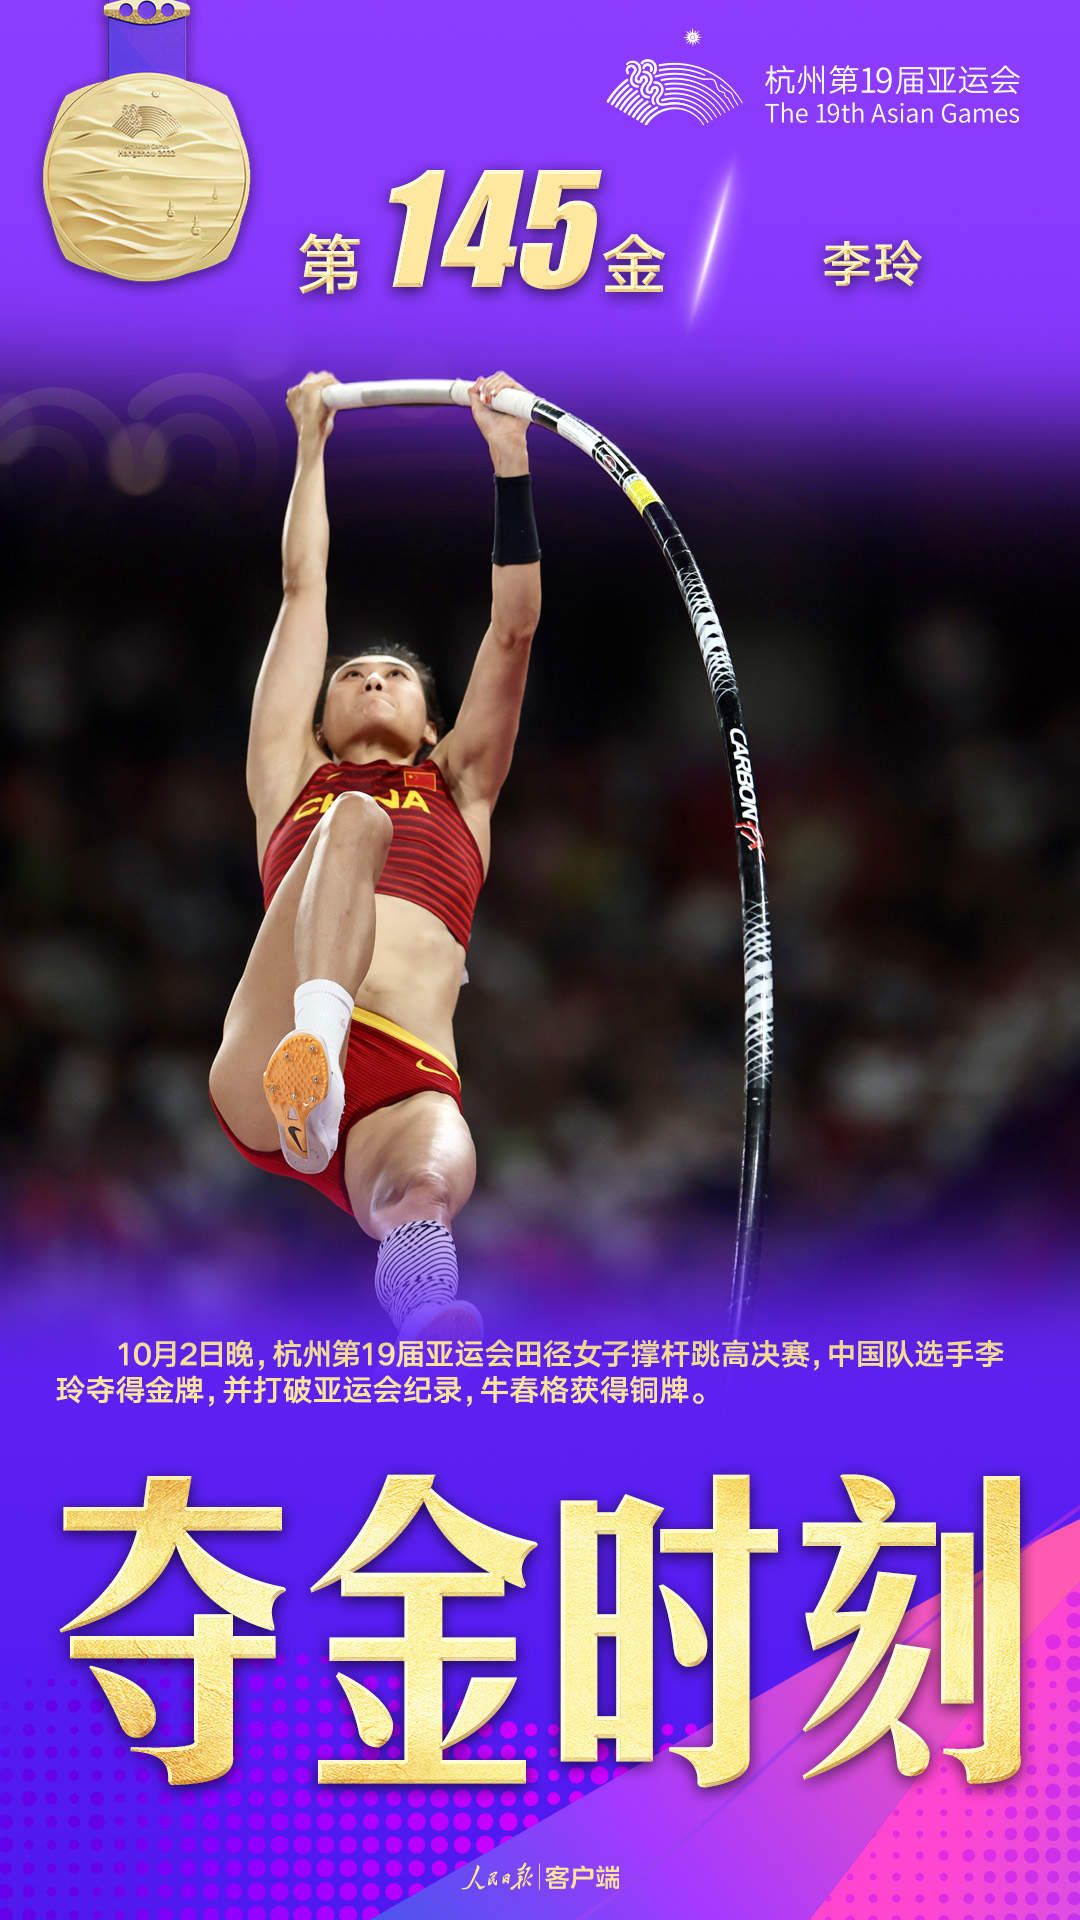 亚洲纪录保持者,中国队选手李玲以4米63的成绩夺得冠军,实现了个人在